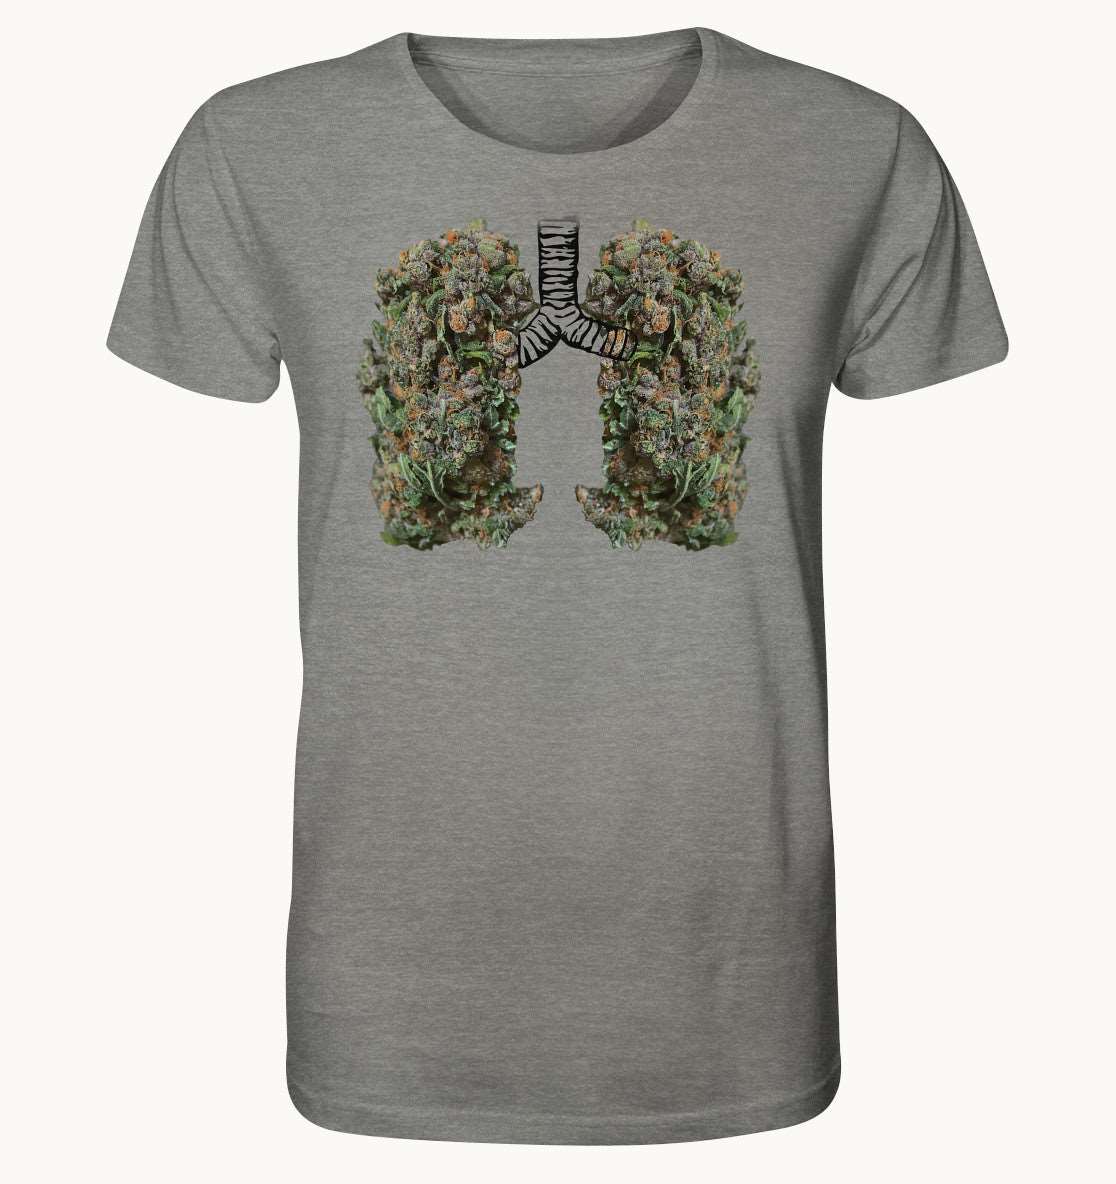 Hanf Lunge - Organic Shirt (meliert)